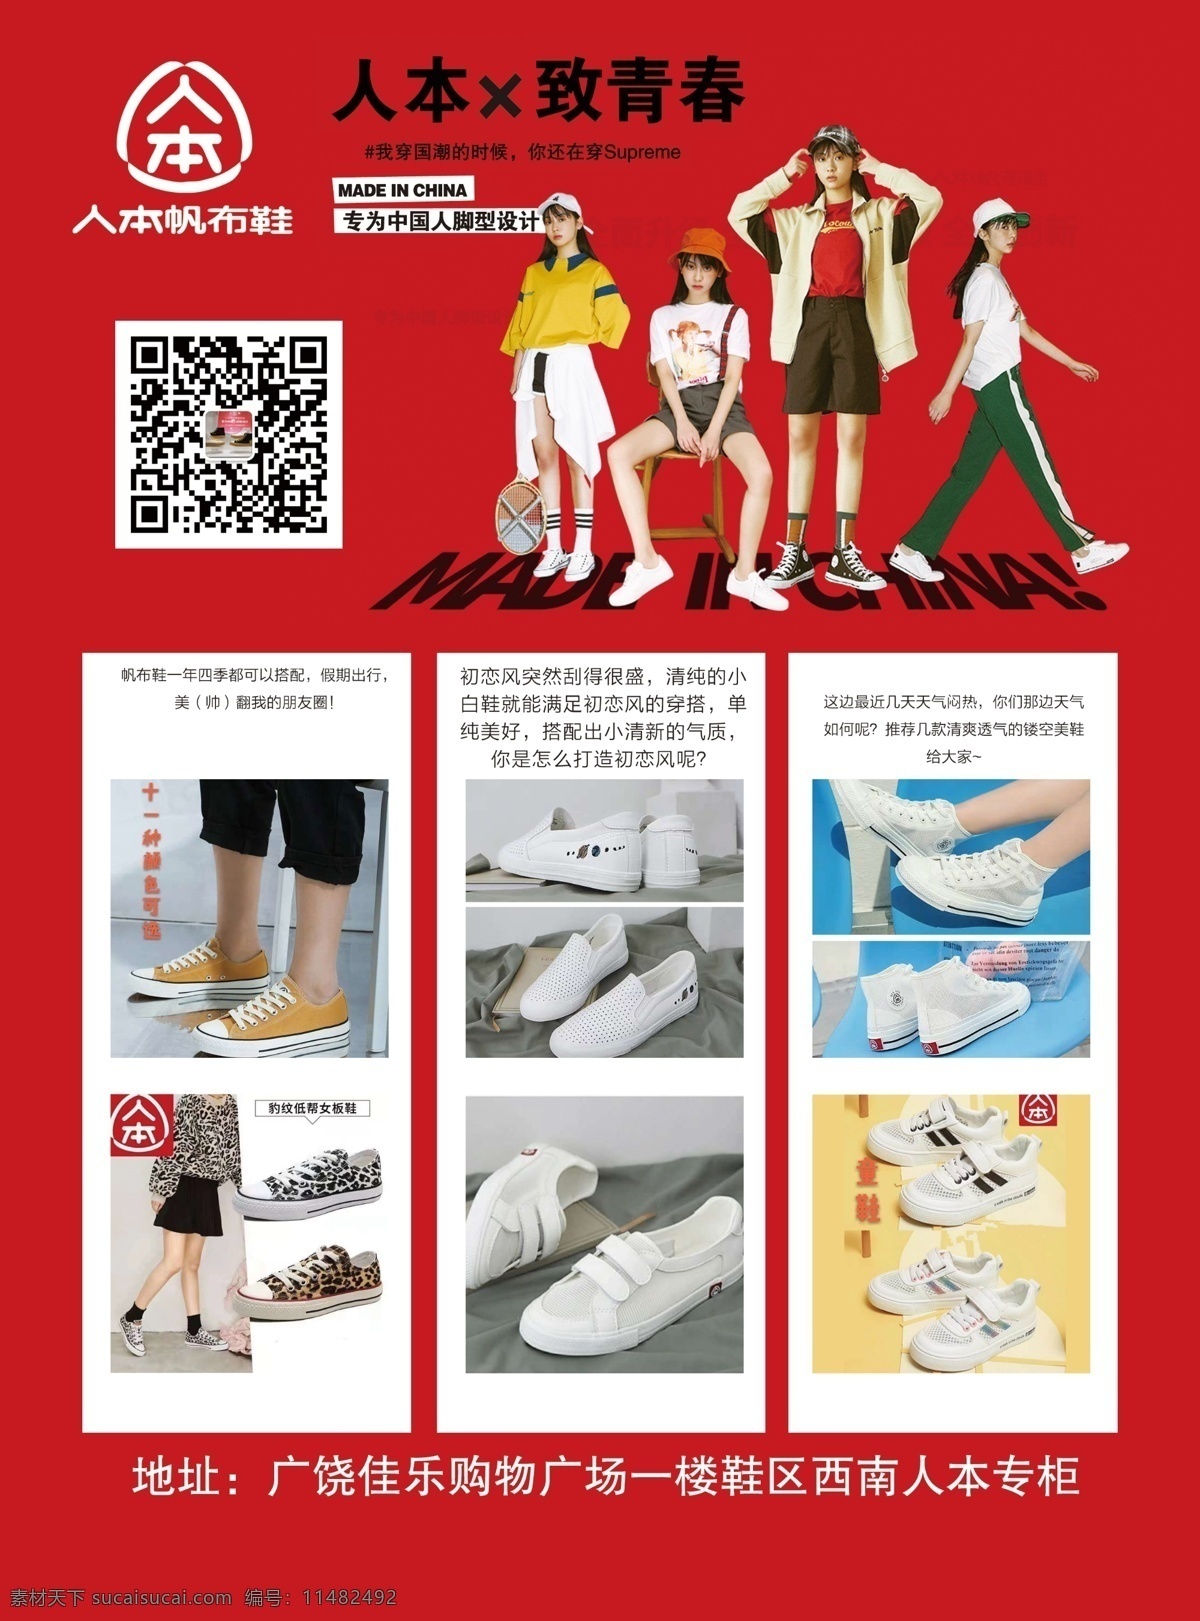 人本帆布鞋 人本标 更舒适 更适合 中国人脚型 ps 分层图 分层